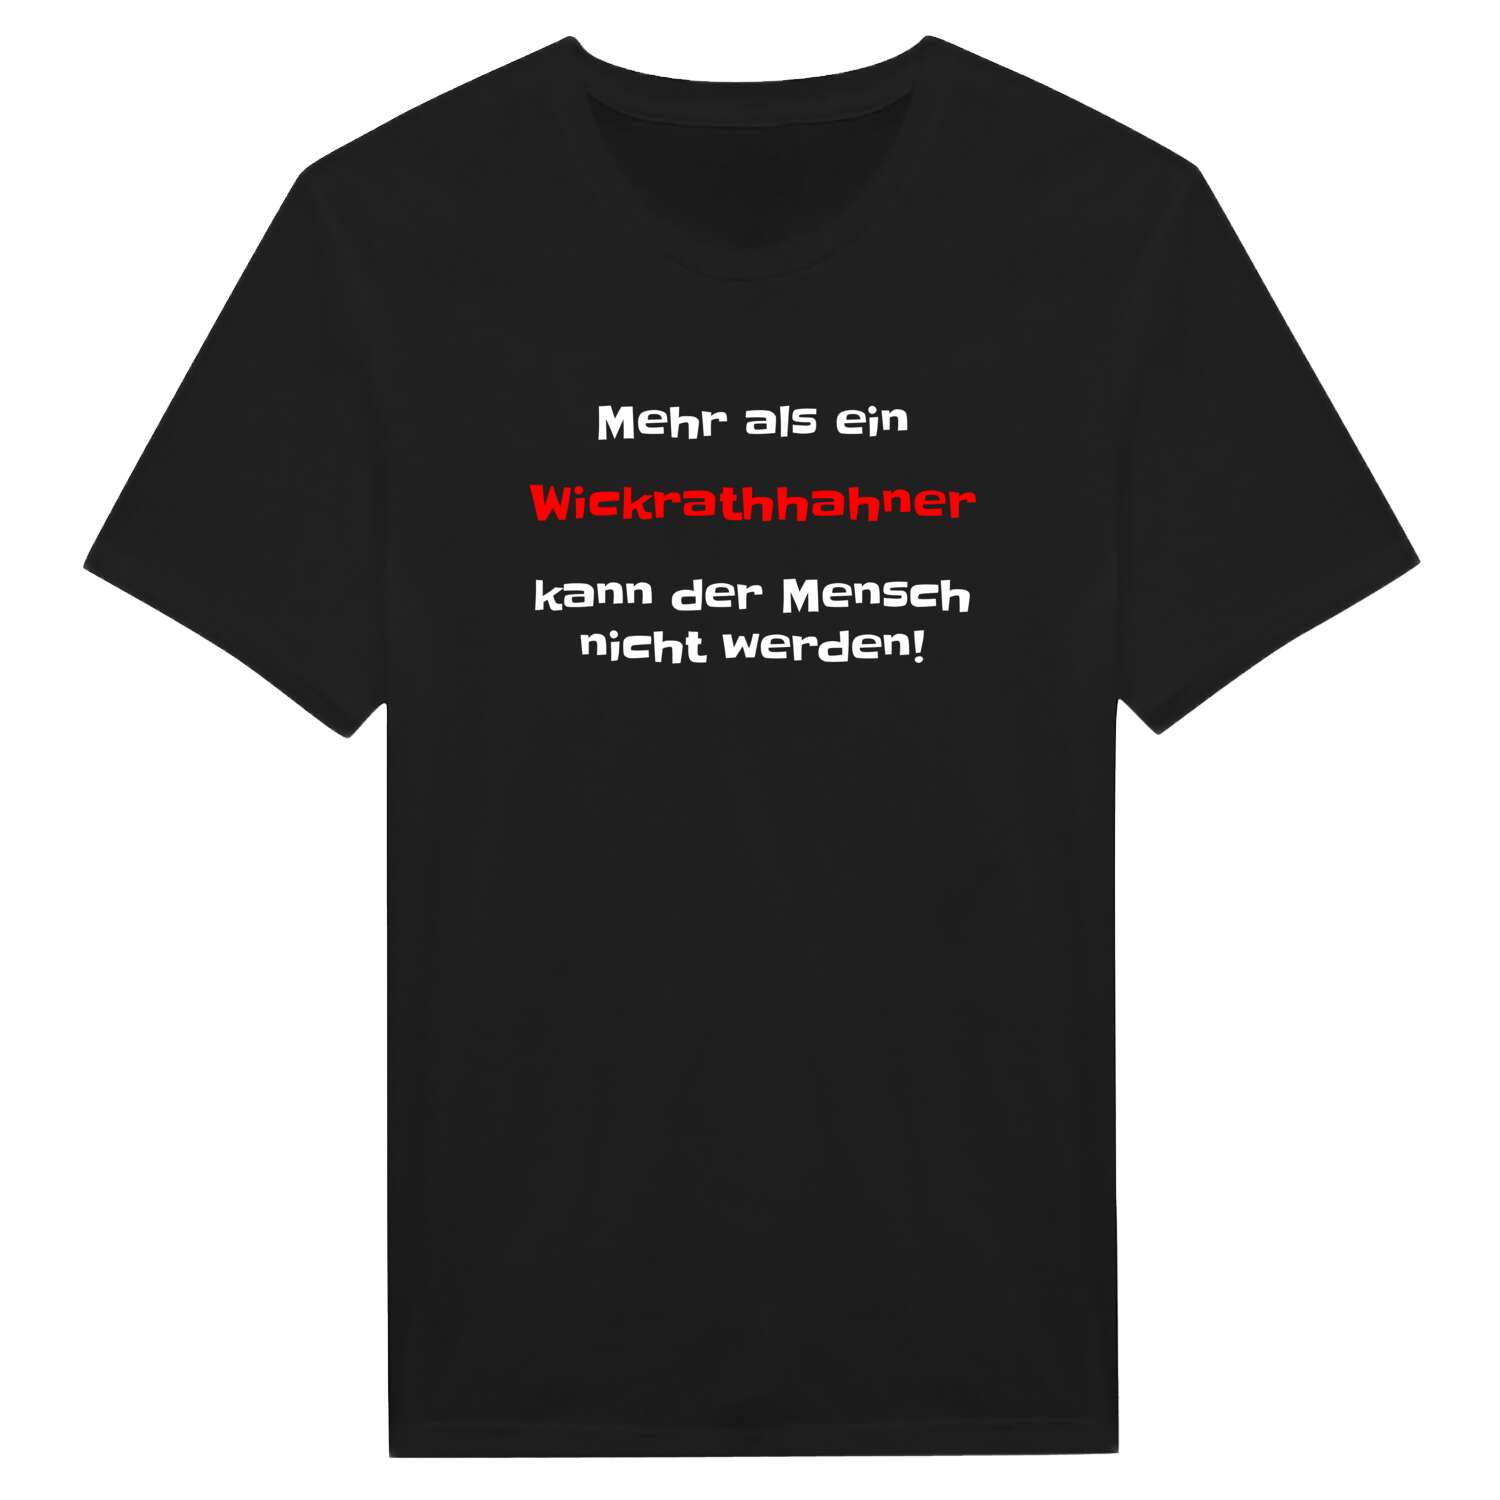 Wickrathhahn T-Shirt »Mehr als ein«